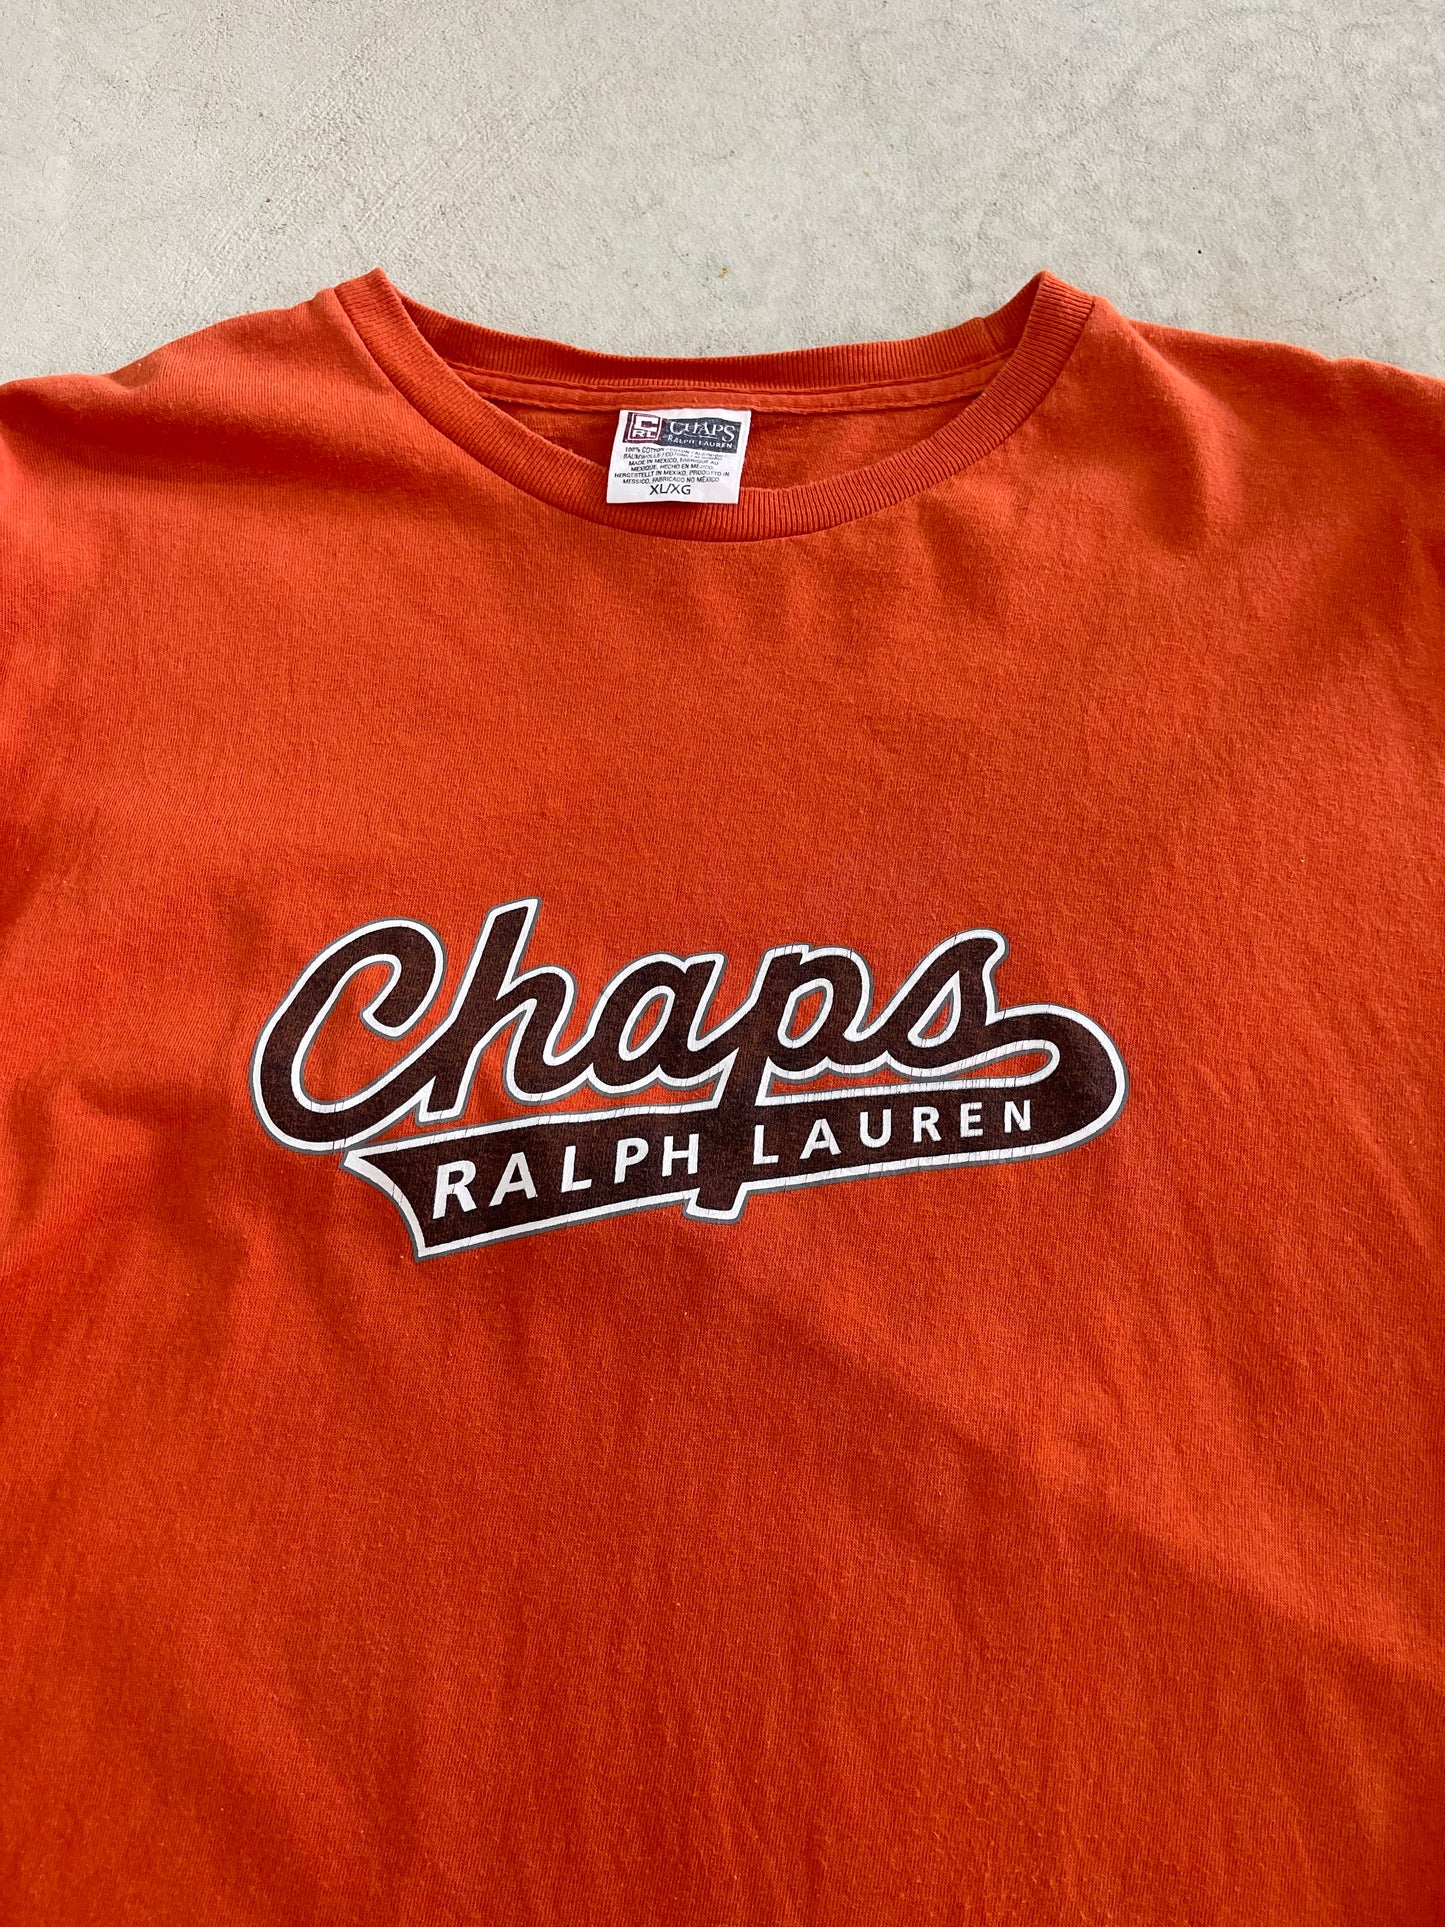 Vintage Chaps Ralph Lauren Long Sleeve Tee (XXL)